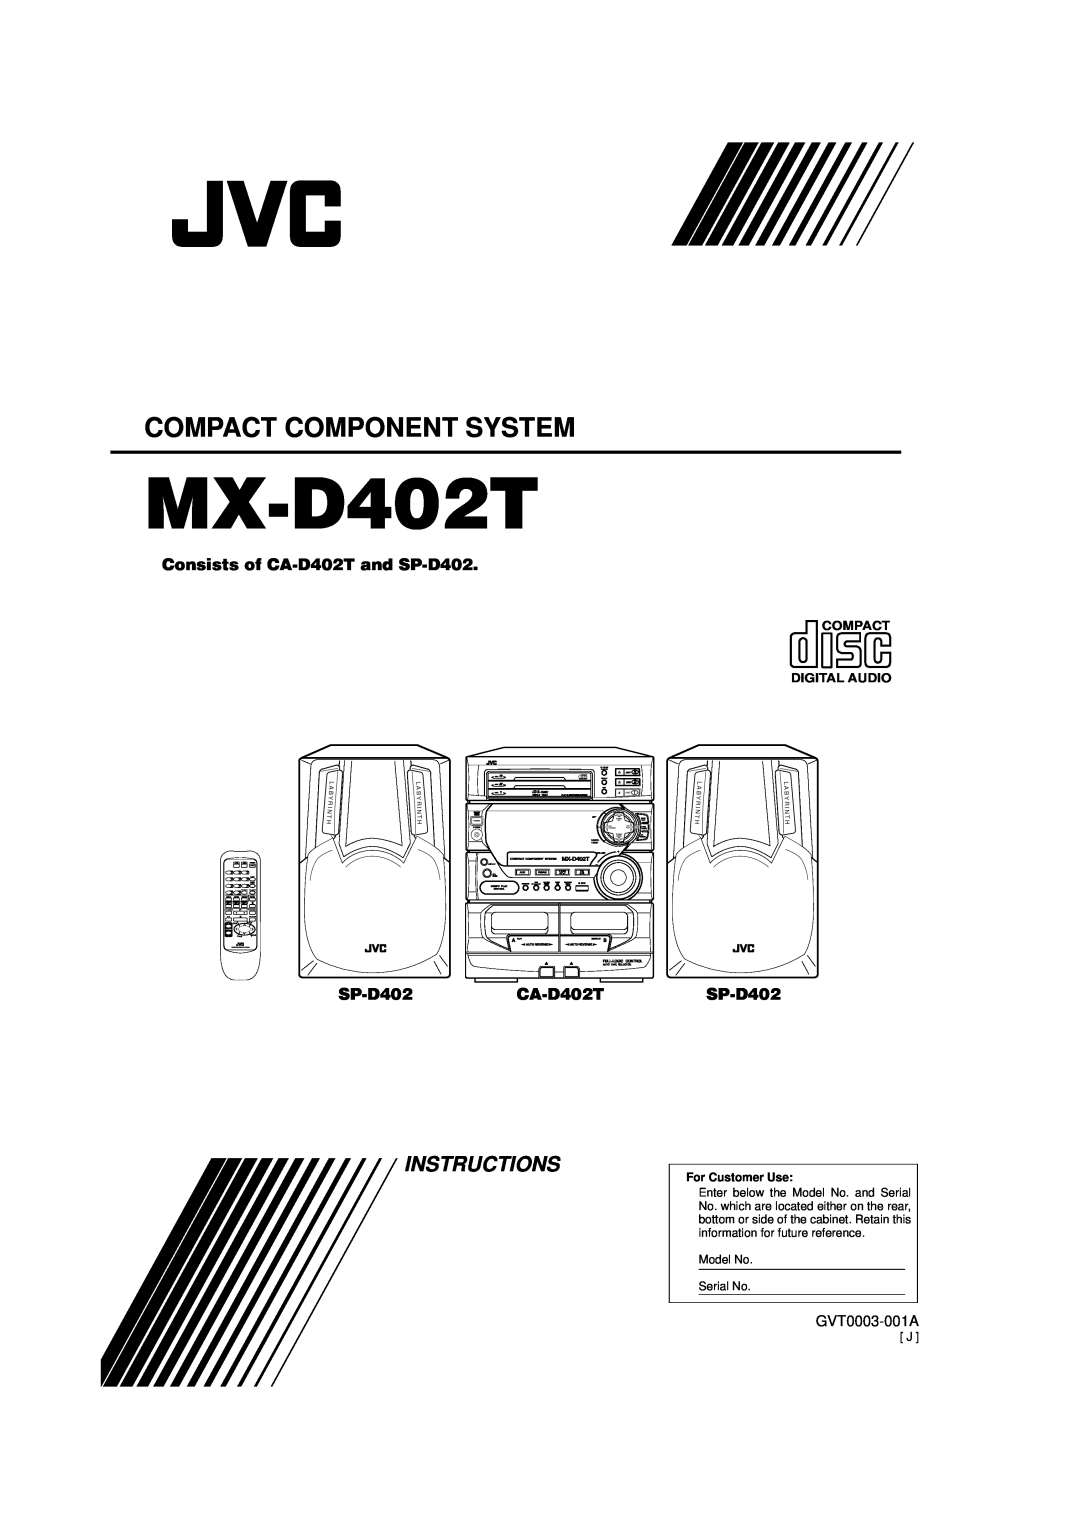 JVC MX-D402T manual Compact Component System, Instructions, Consists of CA-D402Tand SP-D402, SP-D402CA-D402T, GVT0003-001A 